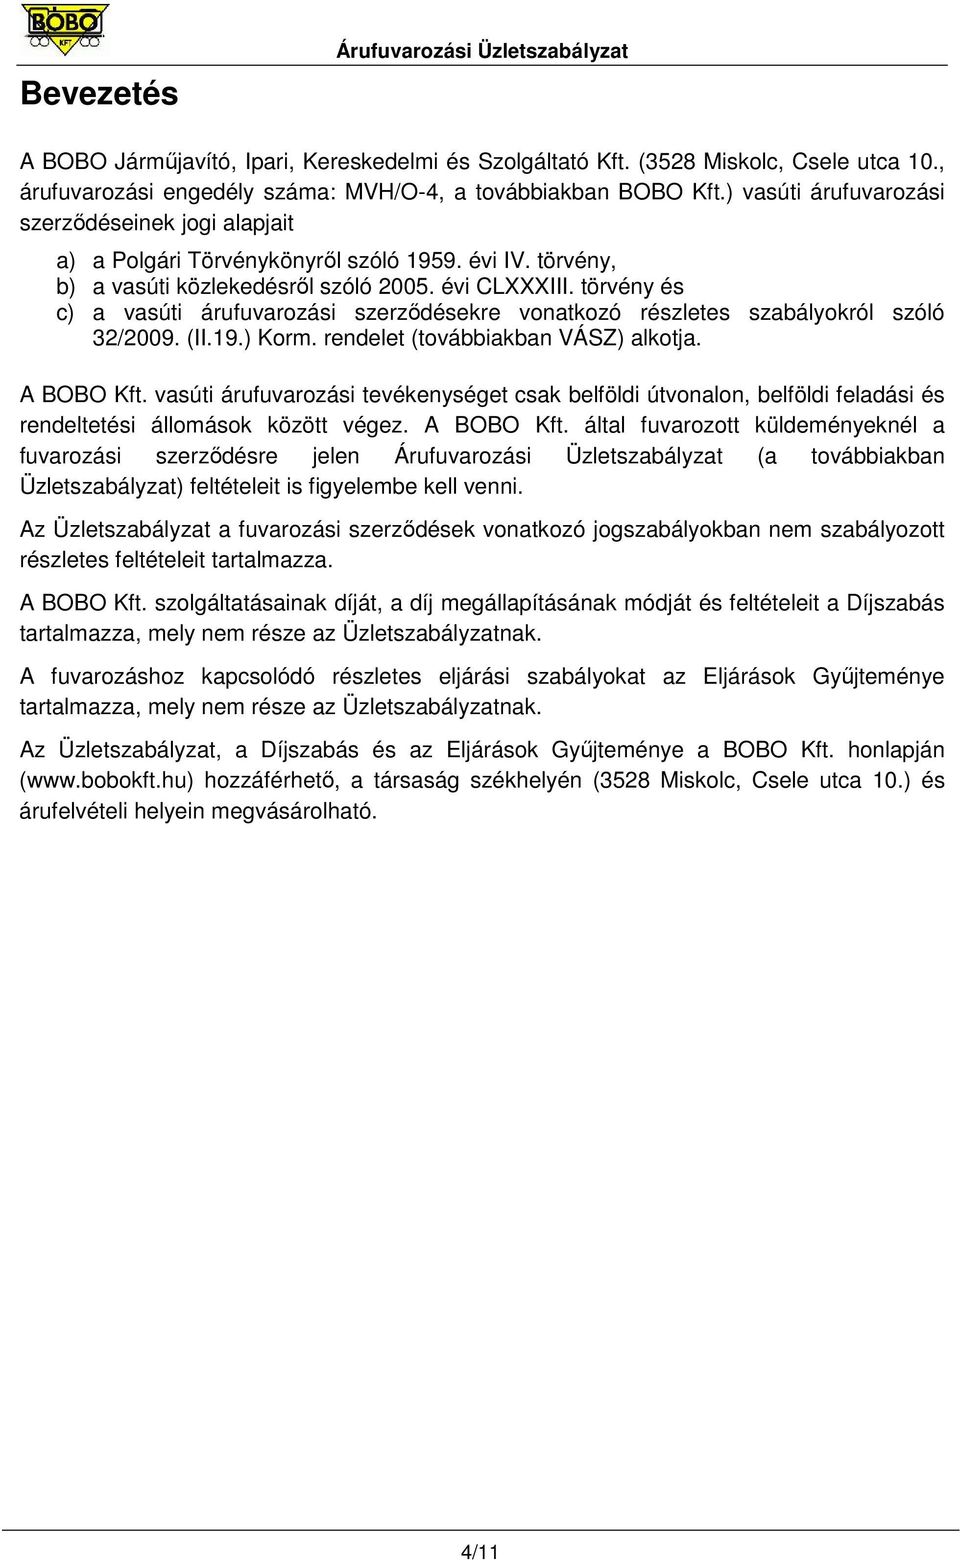 törvény és c) a vasúti árufuvarozási szerzıdésekre vonatkozó részletes szabályokról szóló 32/2009. (II.19.) Korm. rendelet (továbbiakban VÁSZ) alkotja. A BOBO Kft.